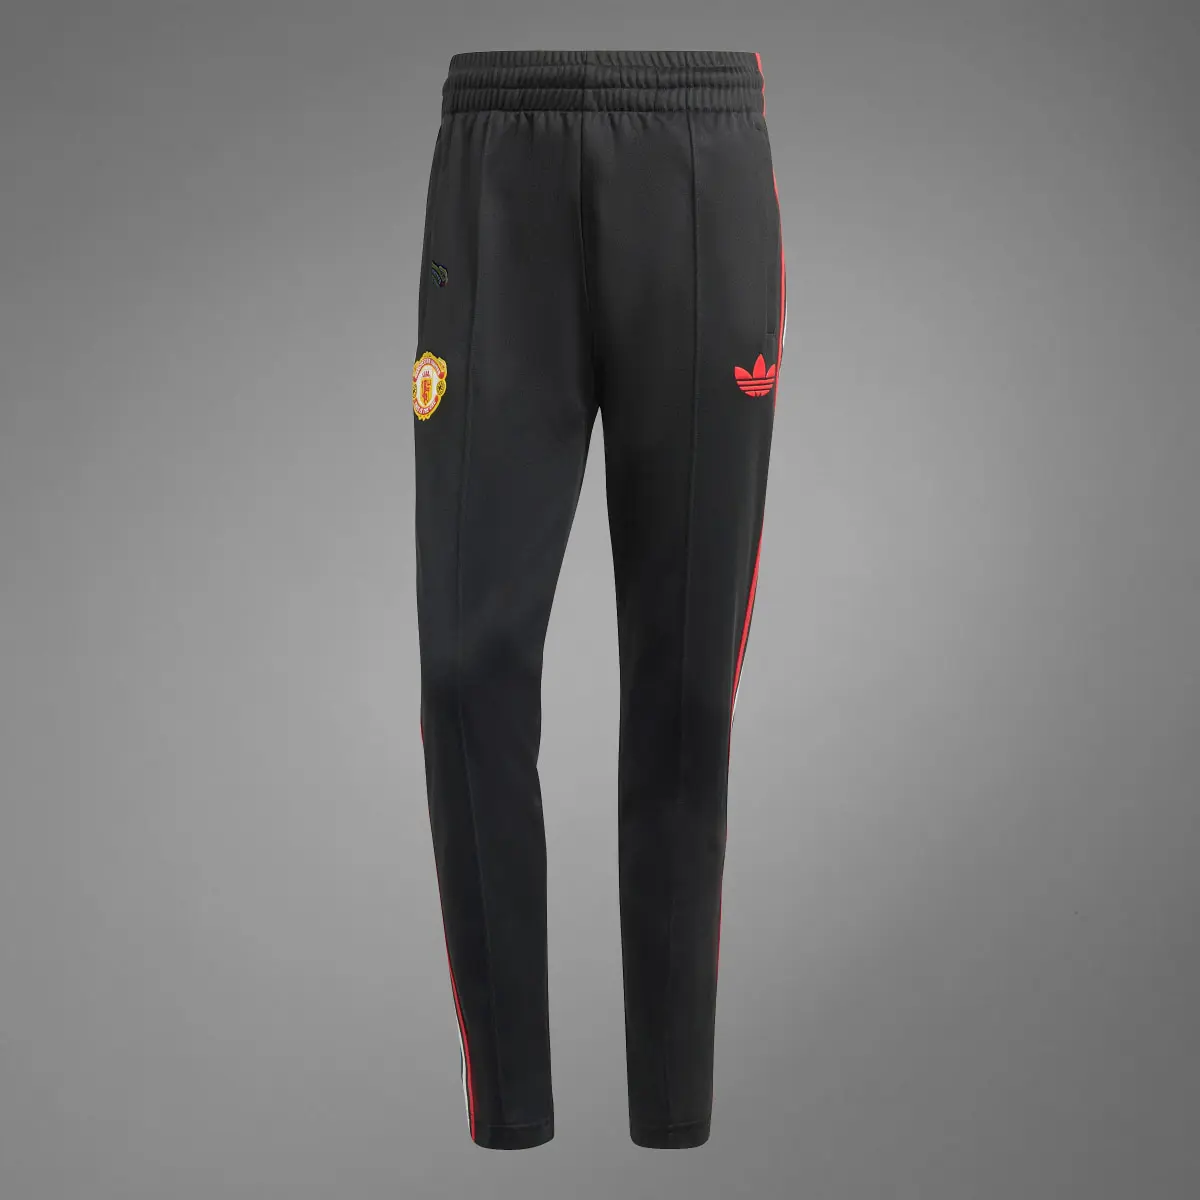 Adidas Calças Originals Stone Roses do Manchester United. 3